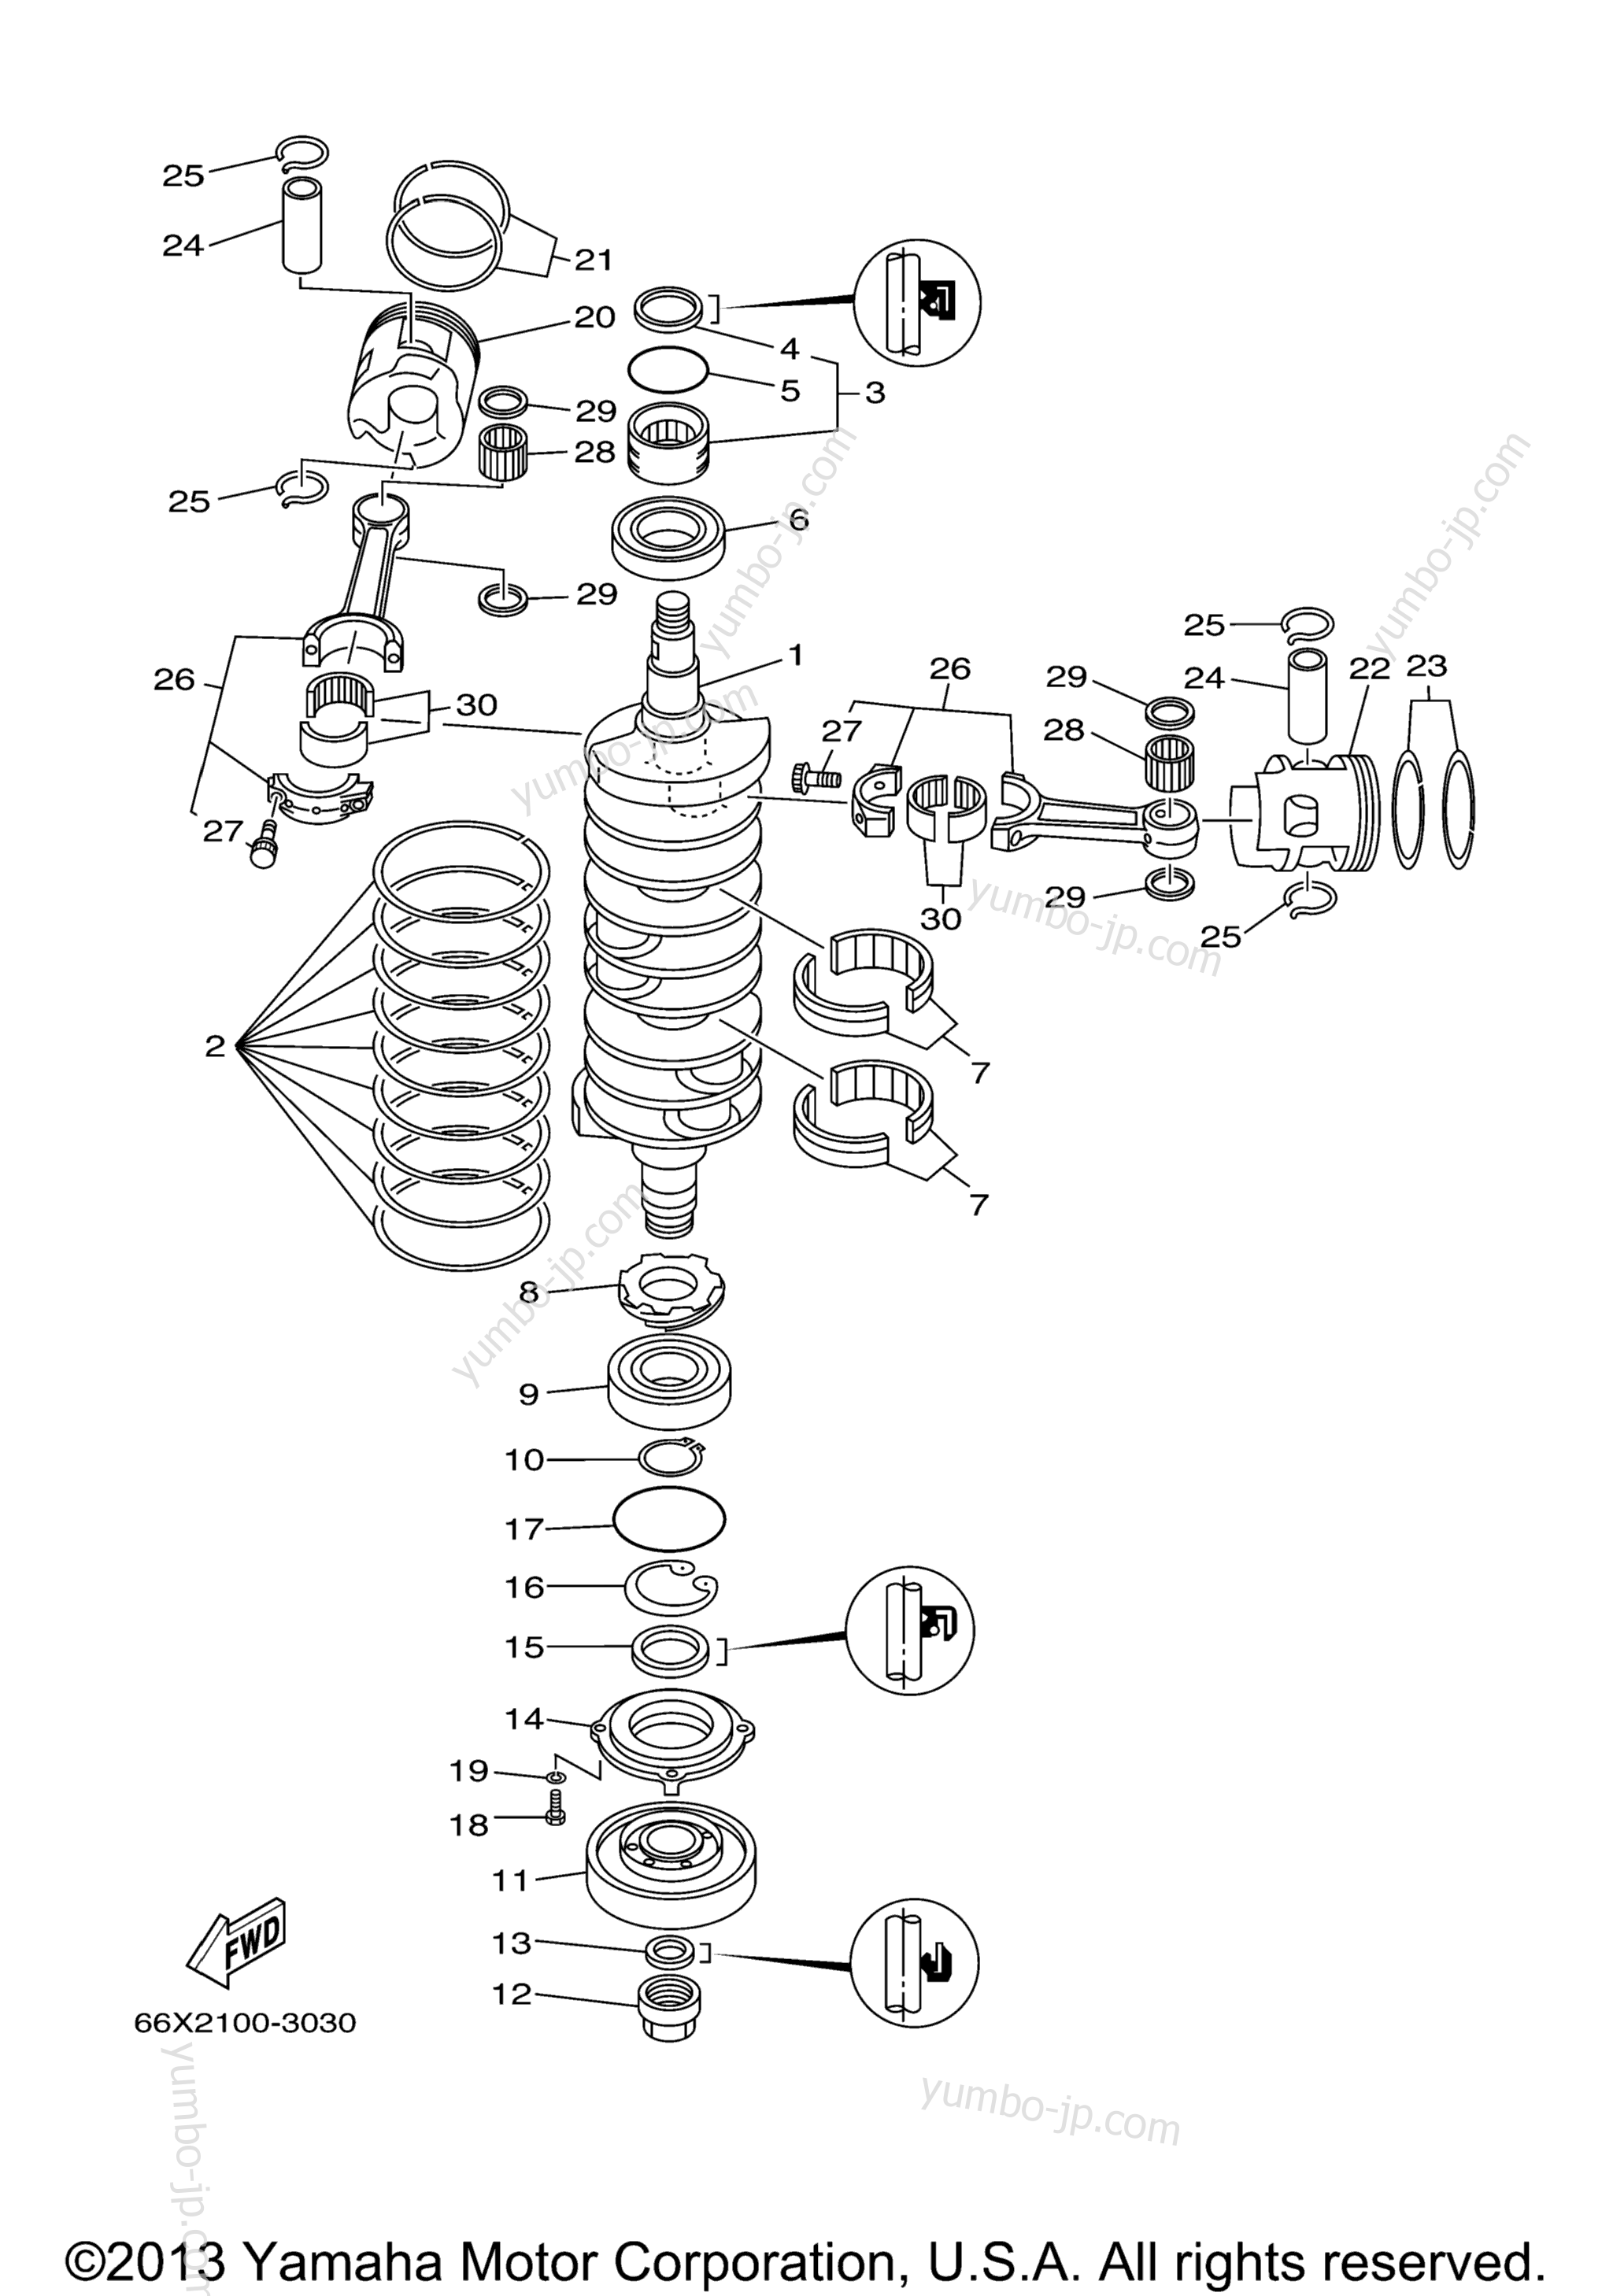 Коленвал и поршневая группа для лодочных моторов YAMAHA LX225_250TXRB (SX225TURB) 2003 г.